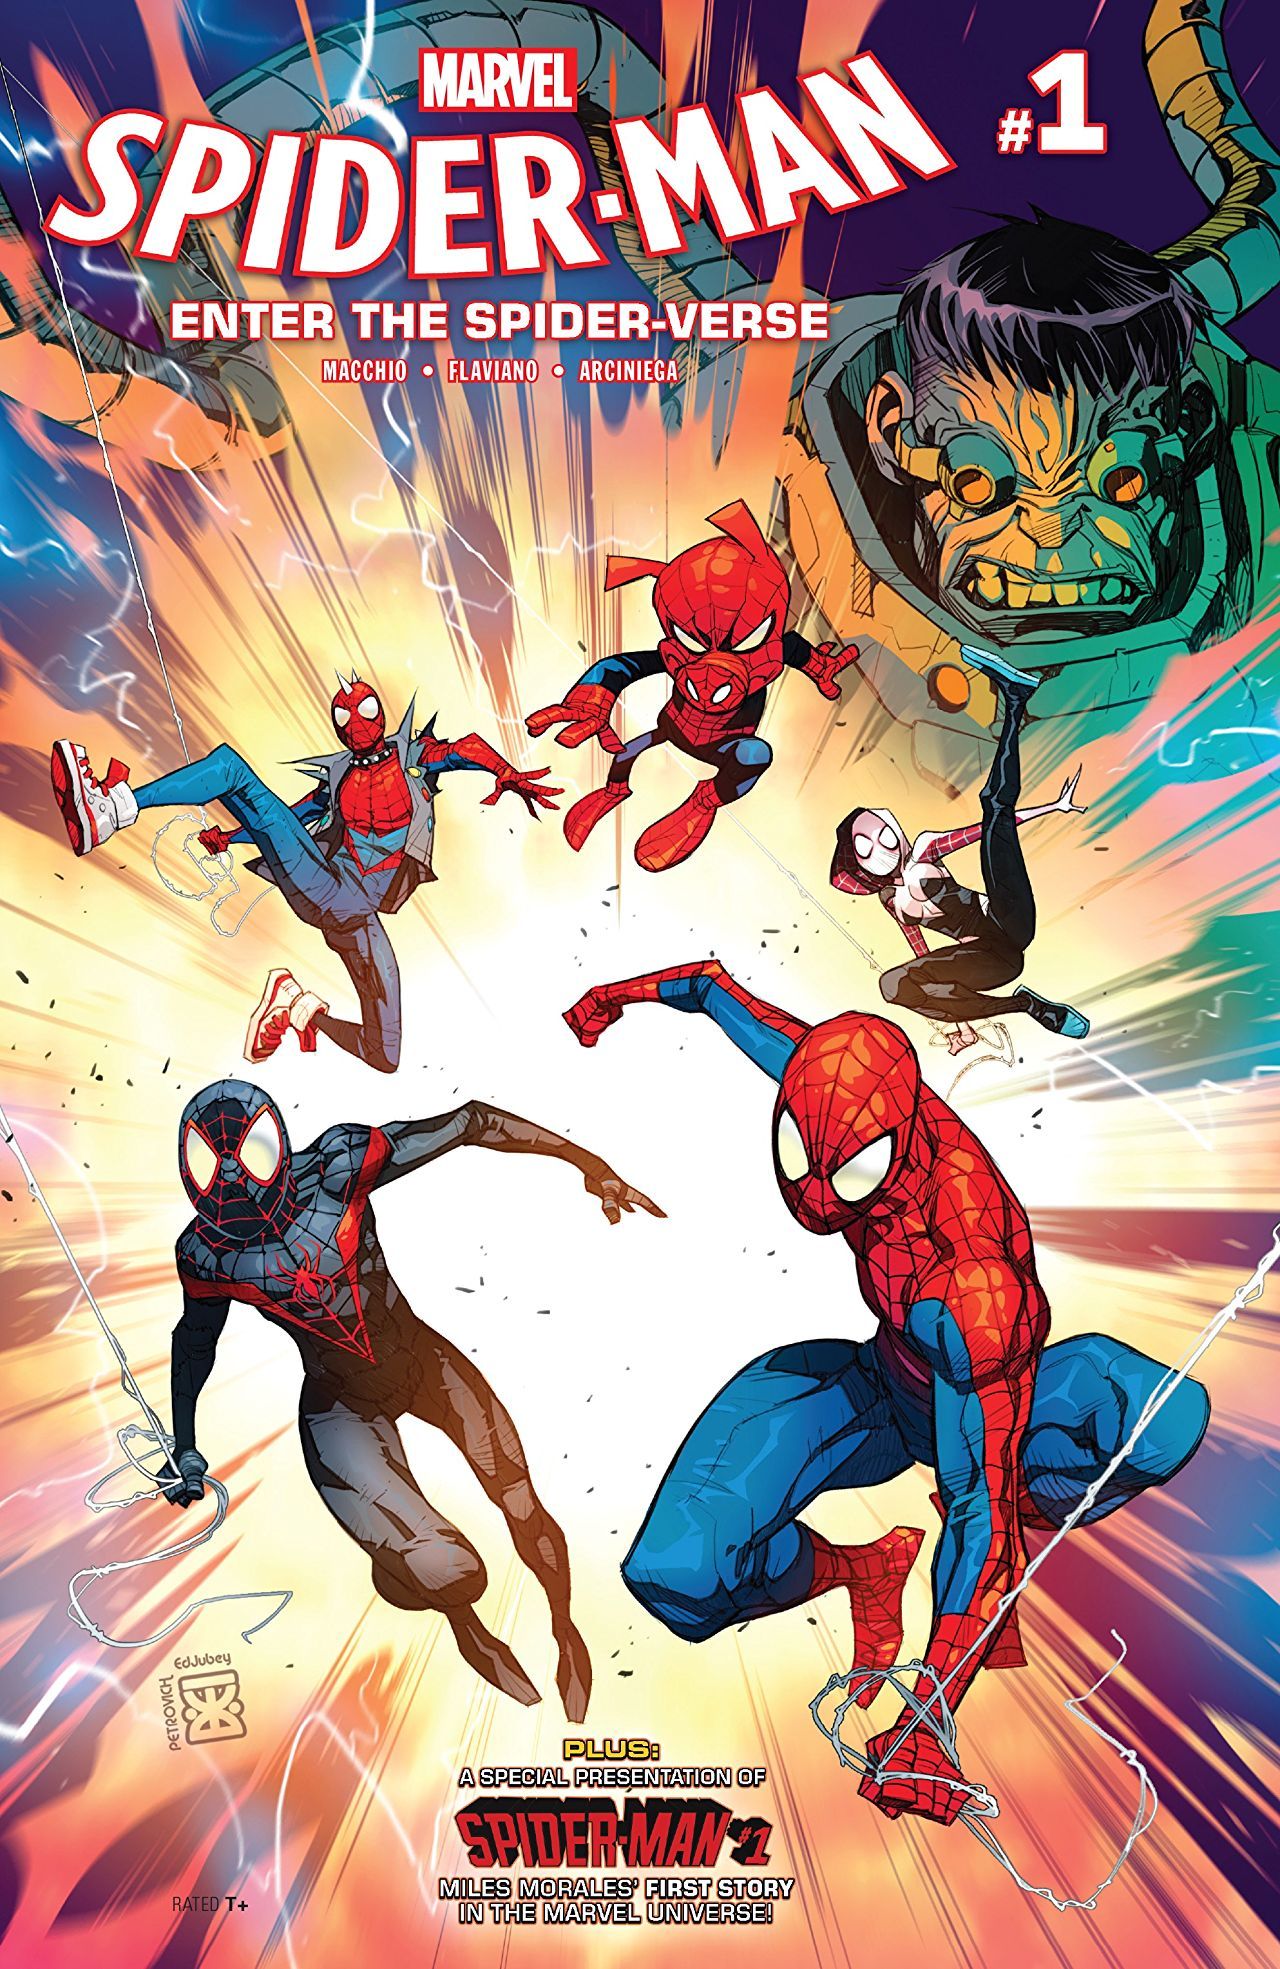 Image SpiderMan Enter the SpiderVerse Vol 1 1.jpg Marvel Database